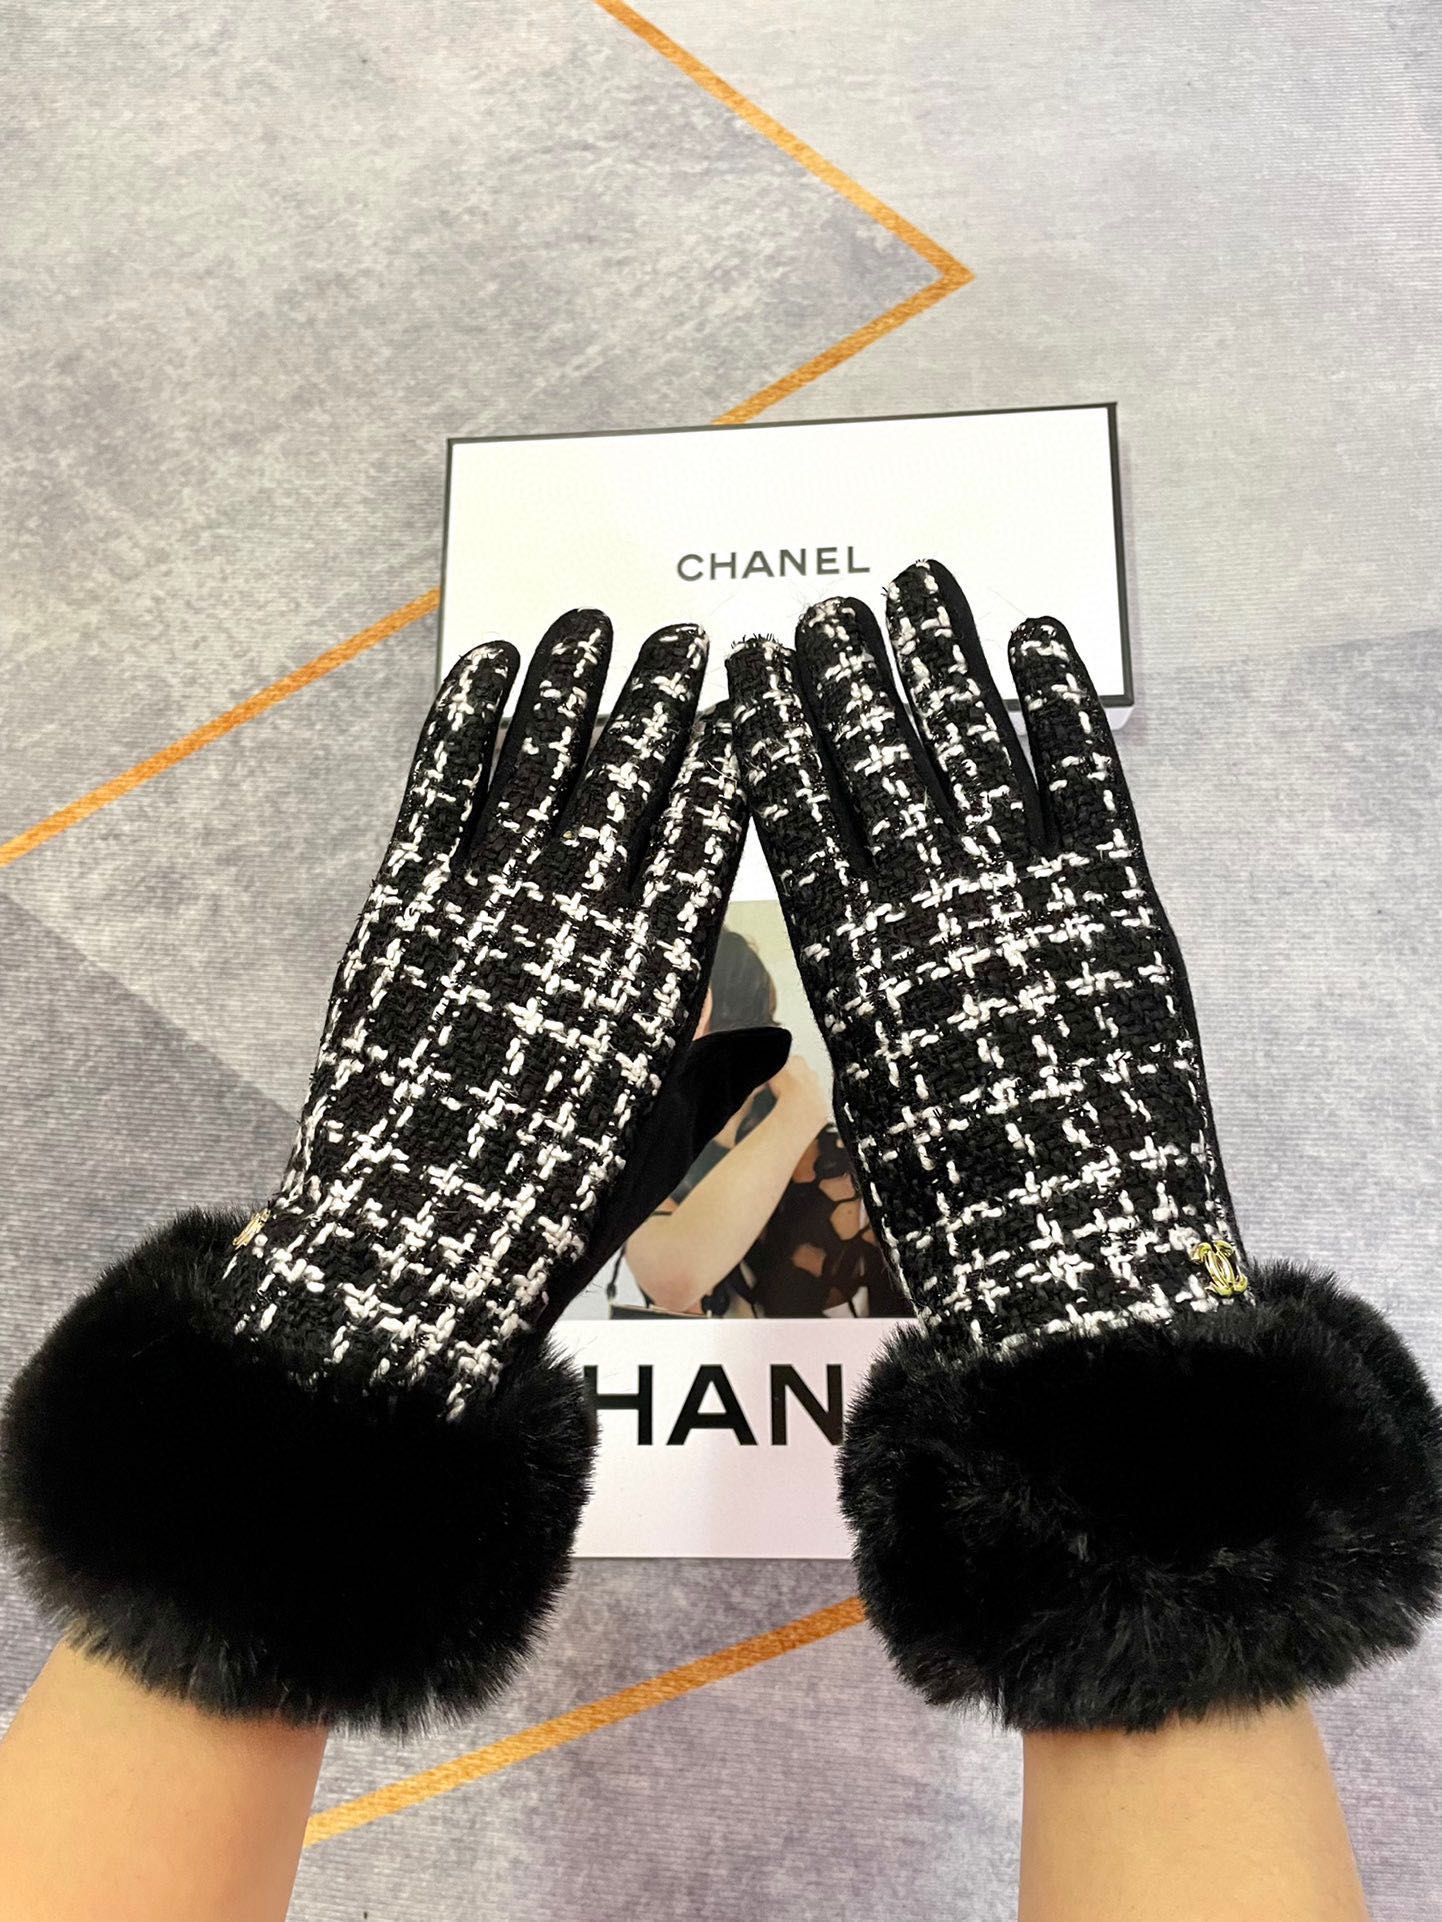 Chanel香奈儿新款水貂绒配羊毛手套手感更软细糯腻亲肤保性暖更好天然染料低温染色呈最现纯粹浓郁饱的满颜